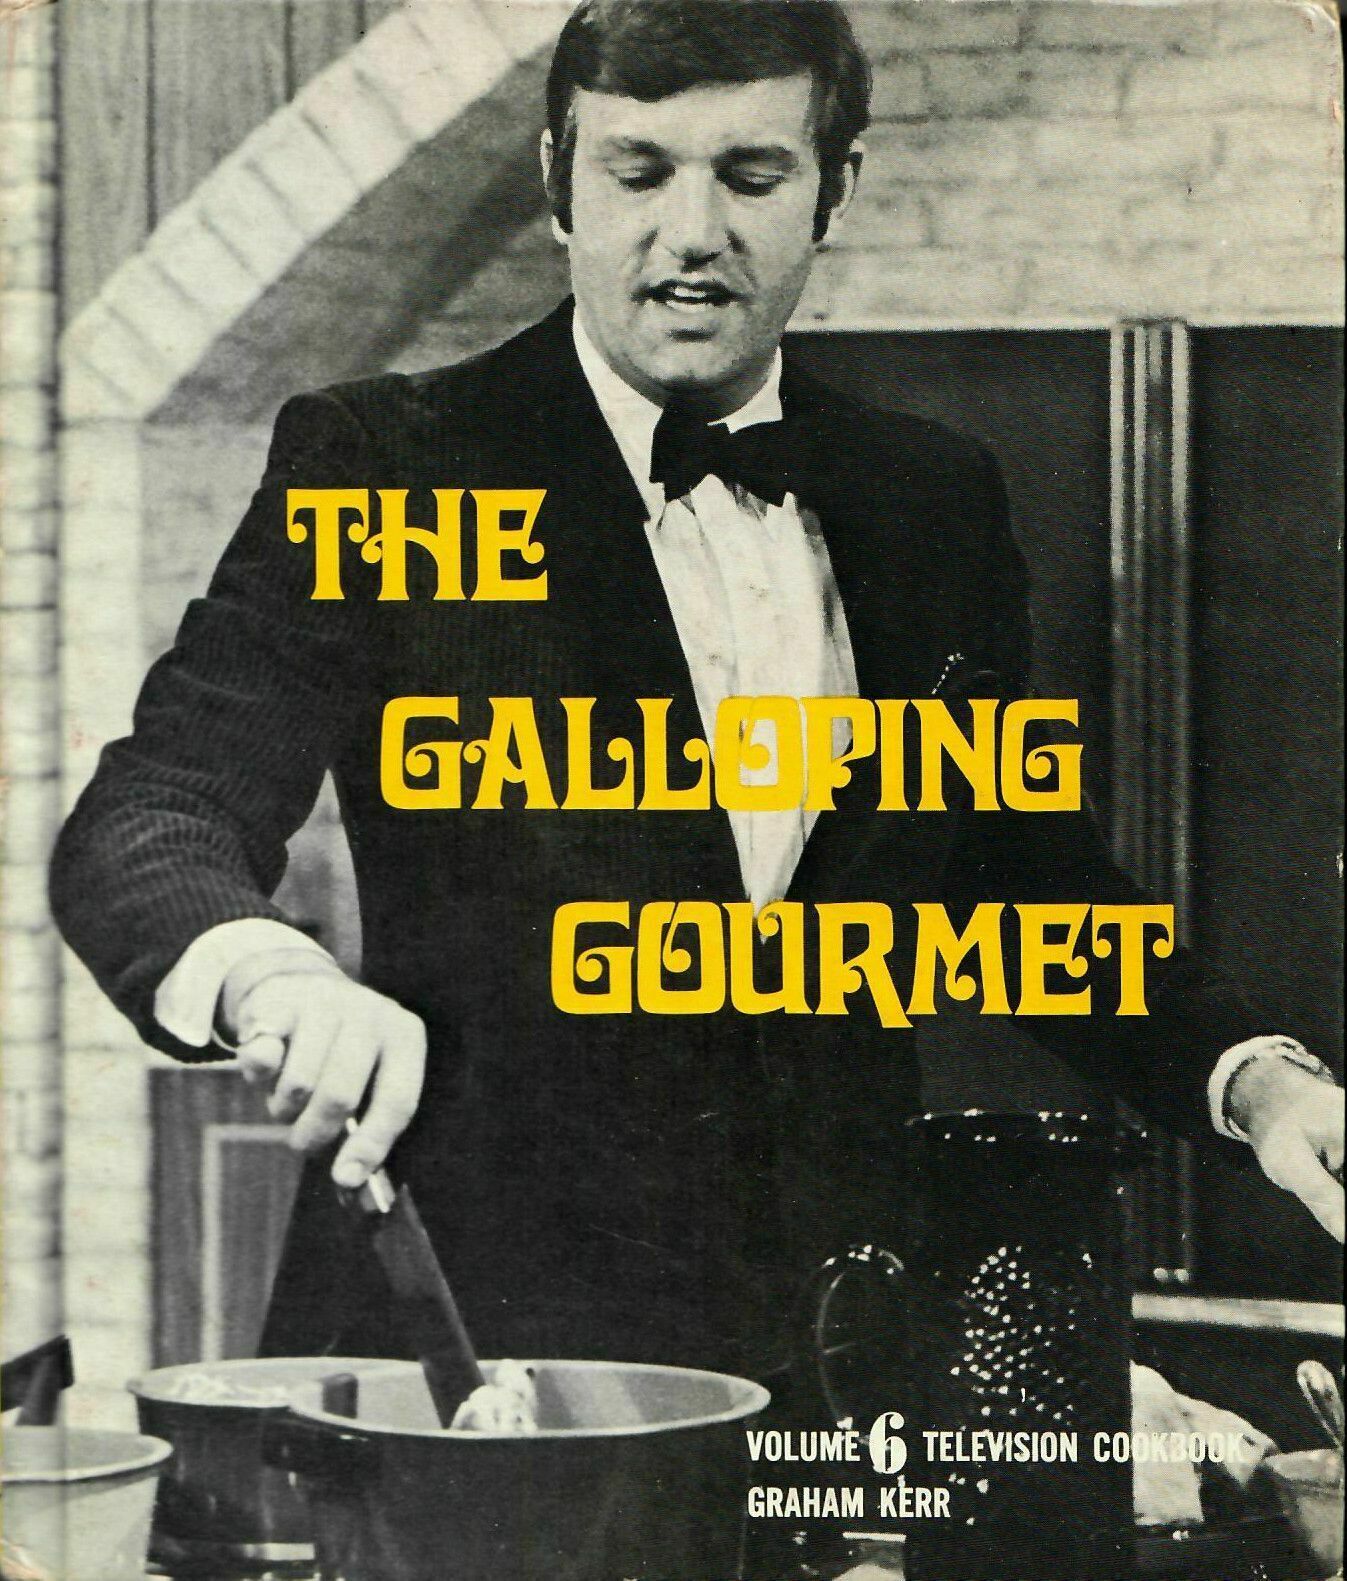 格雷厄姆·克爾（Graham Kerr，1934年1月22日－）是一位英國烹飪名人，因其1968年12月30日至1972年9月14日播出的電視烹飪節目《世界料理秀》而聞名。